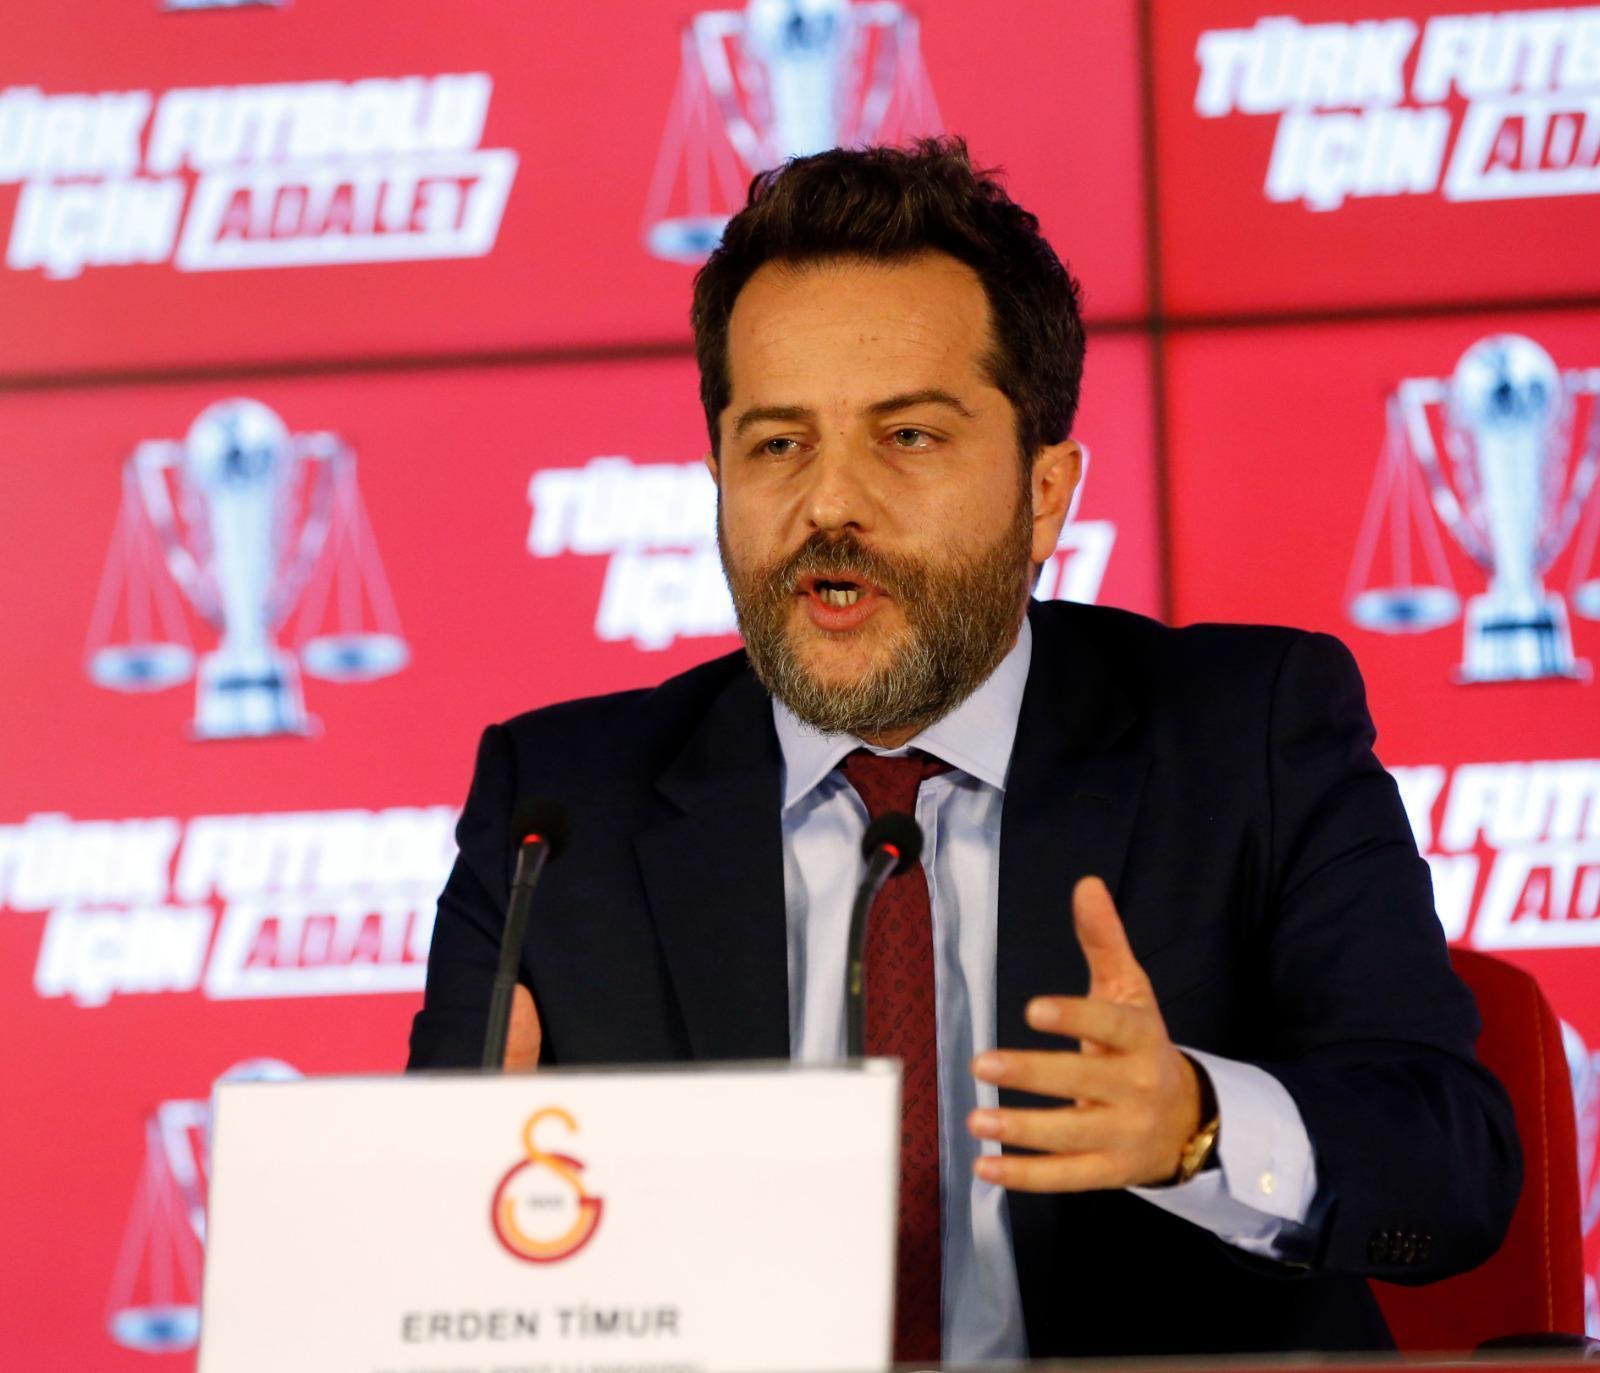 Galatasaray Sportif A.Ş. Başkanvekili Erden Timurdan bomba sözler Fenerbahçe örneği